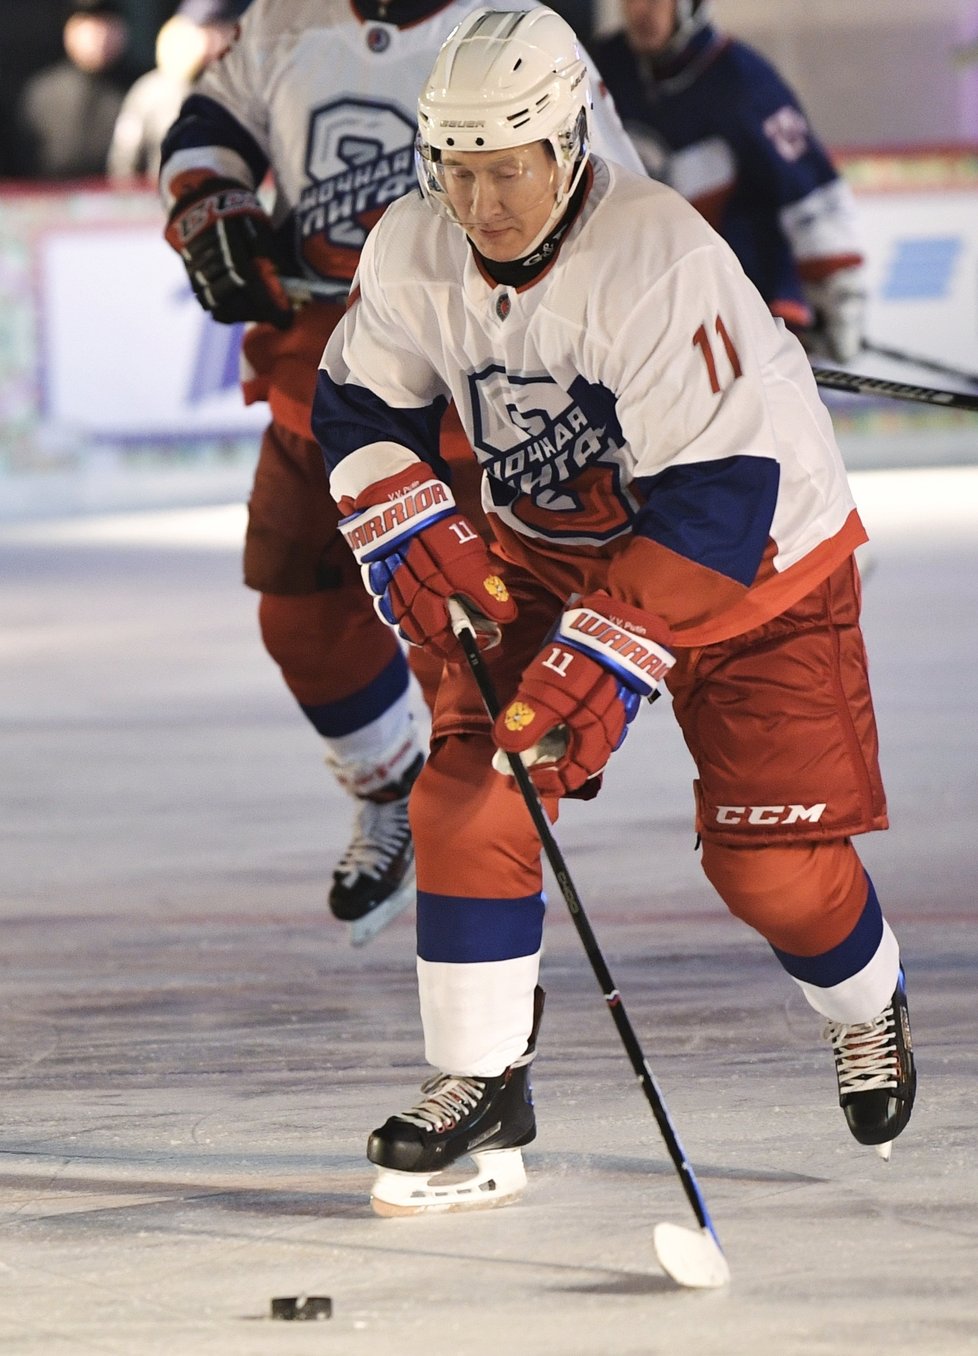 Ruský prezident Vladimir Putin má hokej v oblibě. Zahrál si ho i 29.12.2018 na exhibici v Moskvě